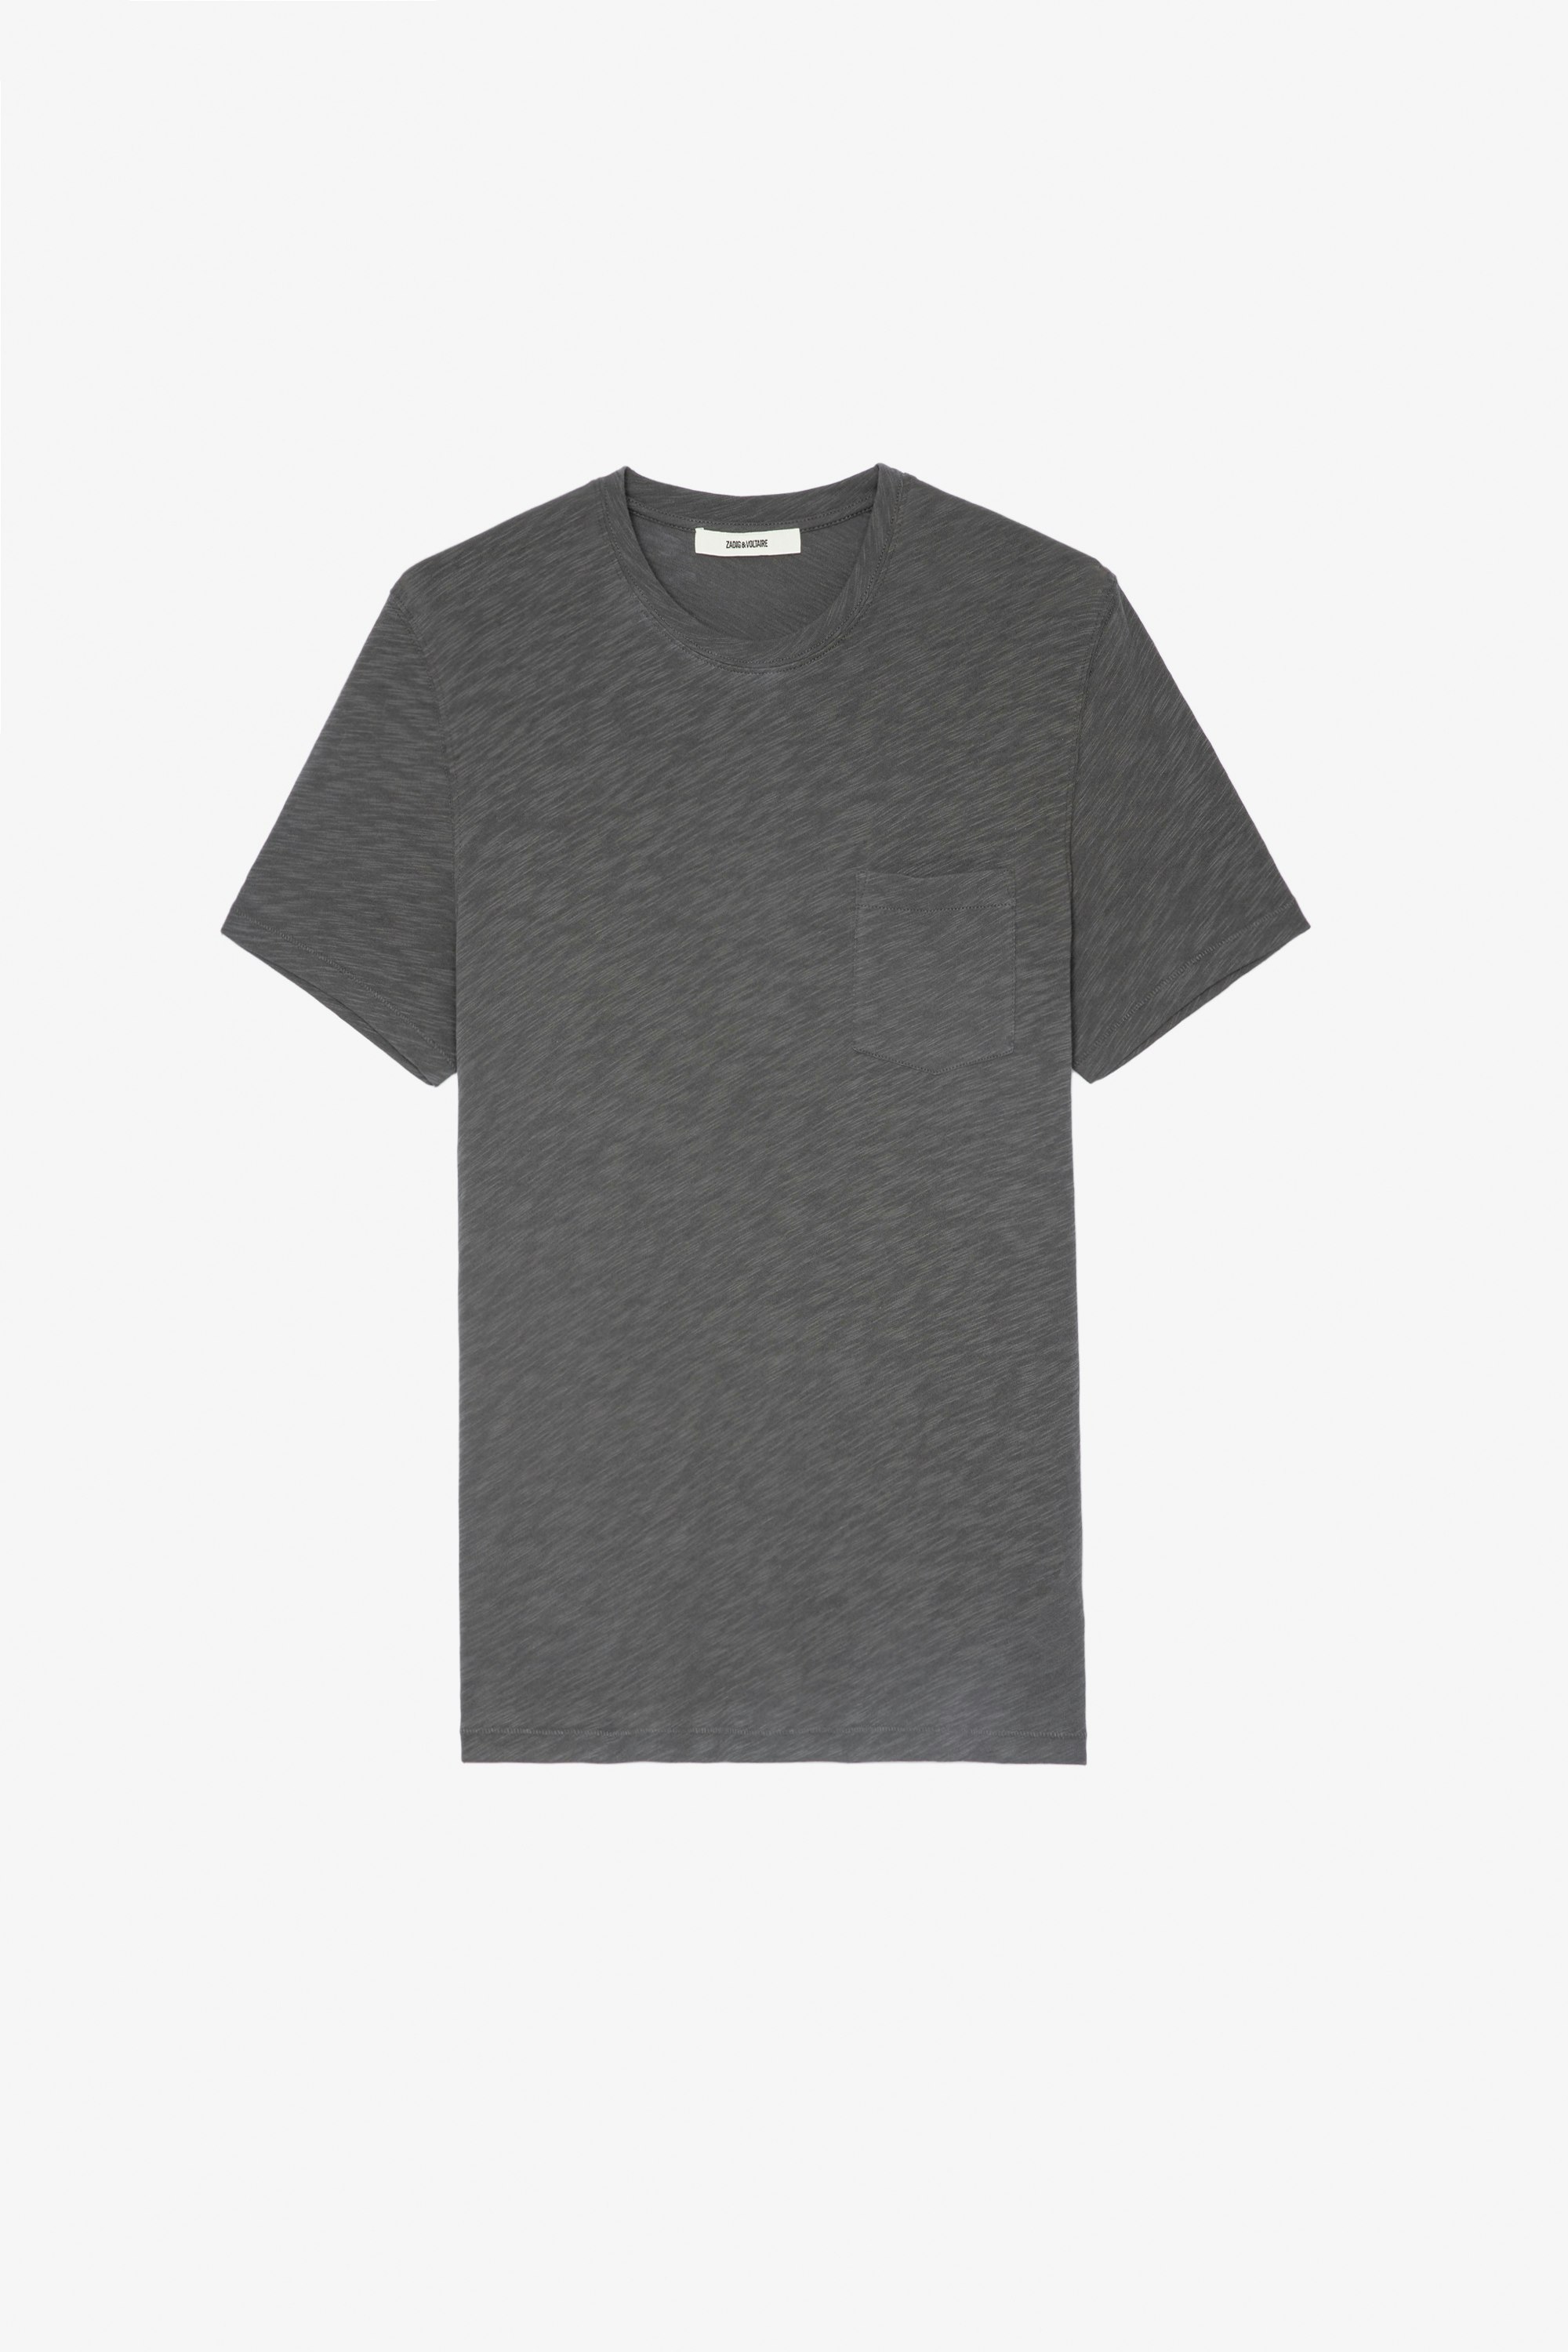 Camiseta Stockholm Jaspeada Camiseta de algodón jaspeado color gris de cuello redondo y mangas cortas, con estampado de calavera en la espalda Hombre